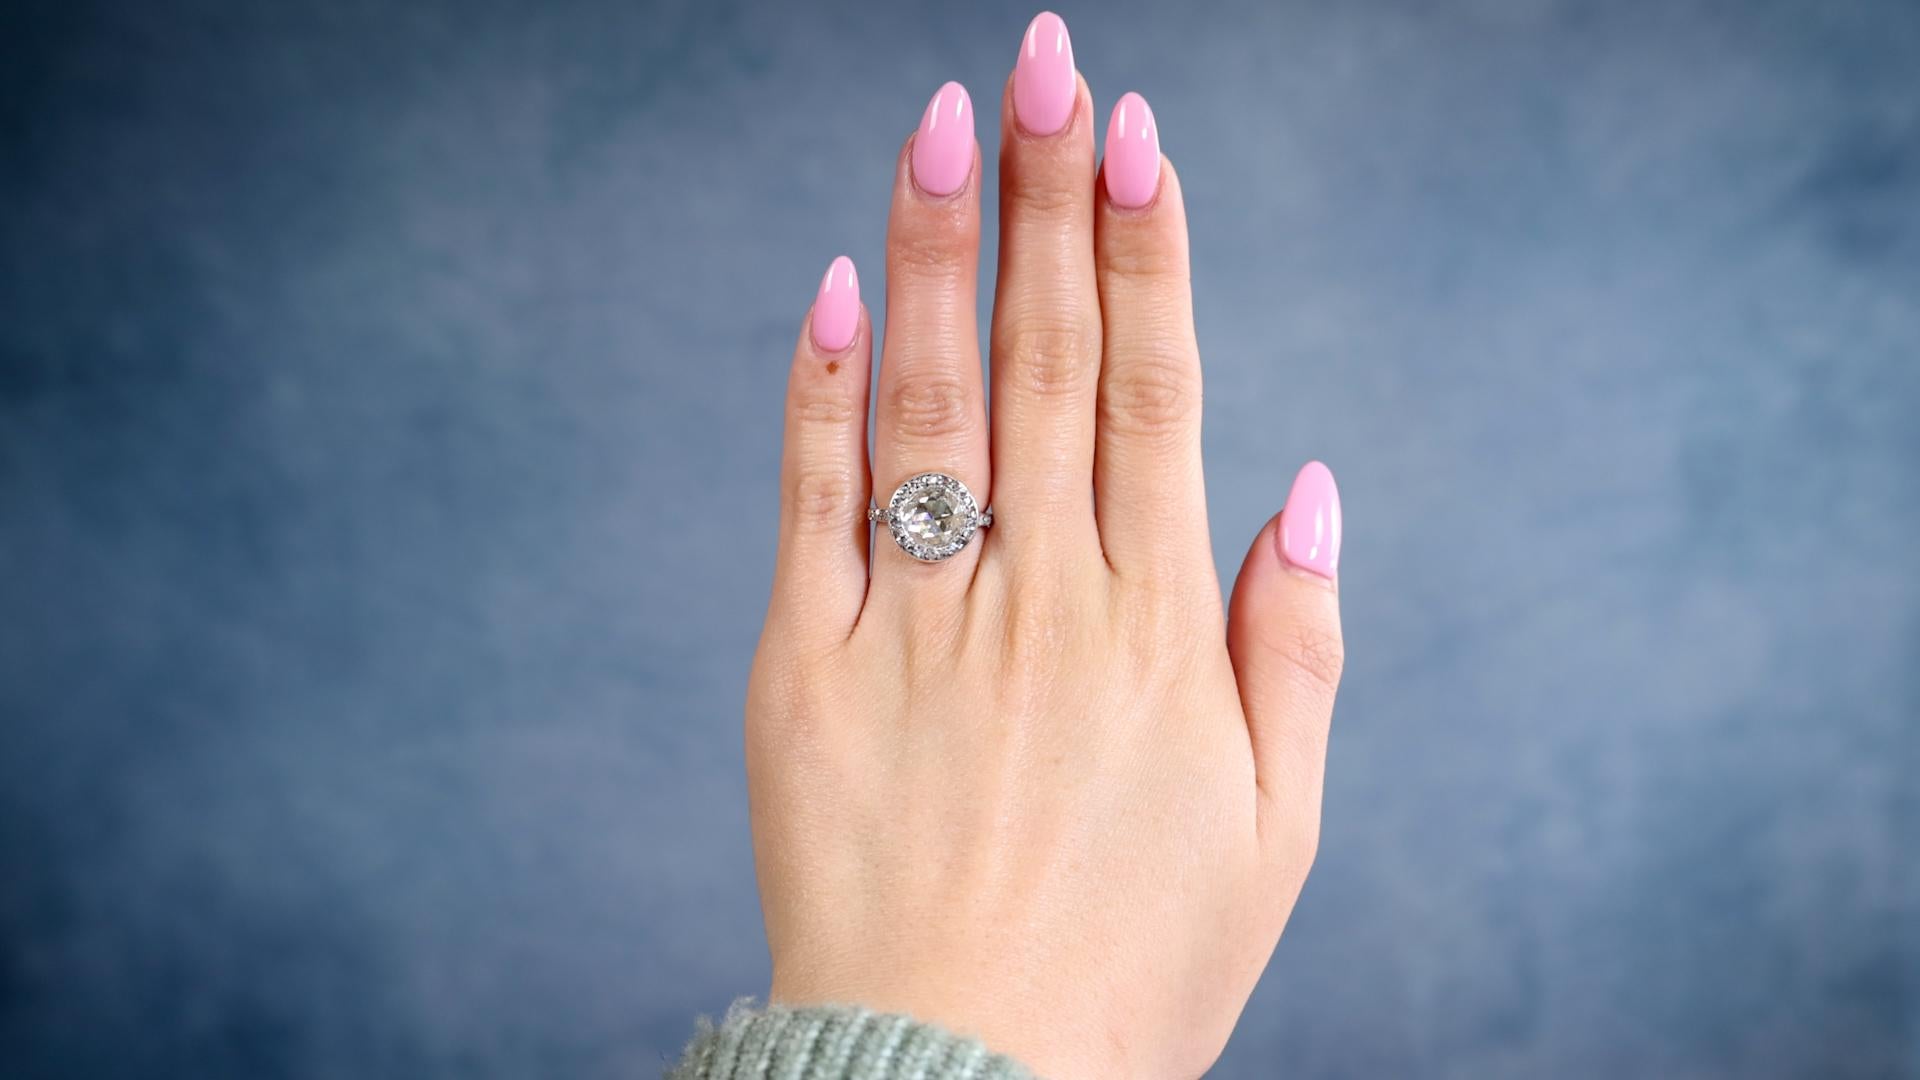 Eine späte viktorianische GIA 1,90 Karat Rose Cut Diamant Silber 18k Gelbgold Halo Ring. Mit einem GIA-Diamanten im Rosenschliff von 1,90 Karat, begleitet von der GIA-Nummer 5234090573, die besagt, dass der Diamant die Farbe M und die Reinheit I1